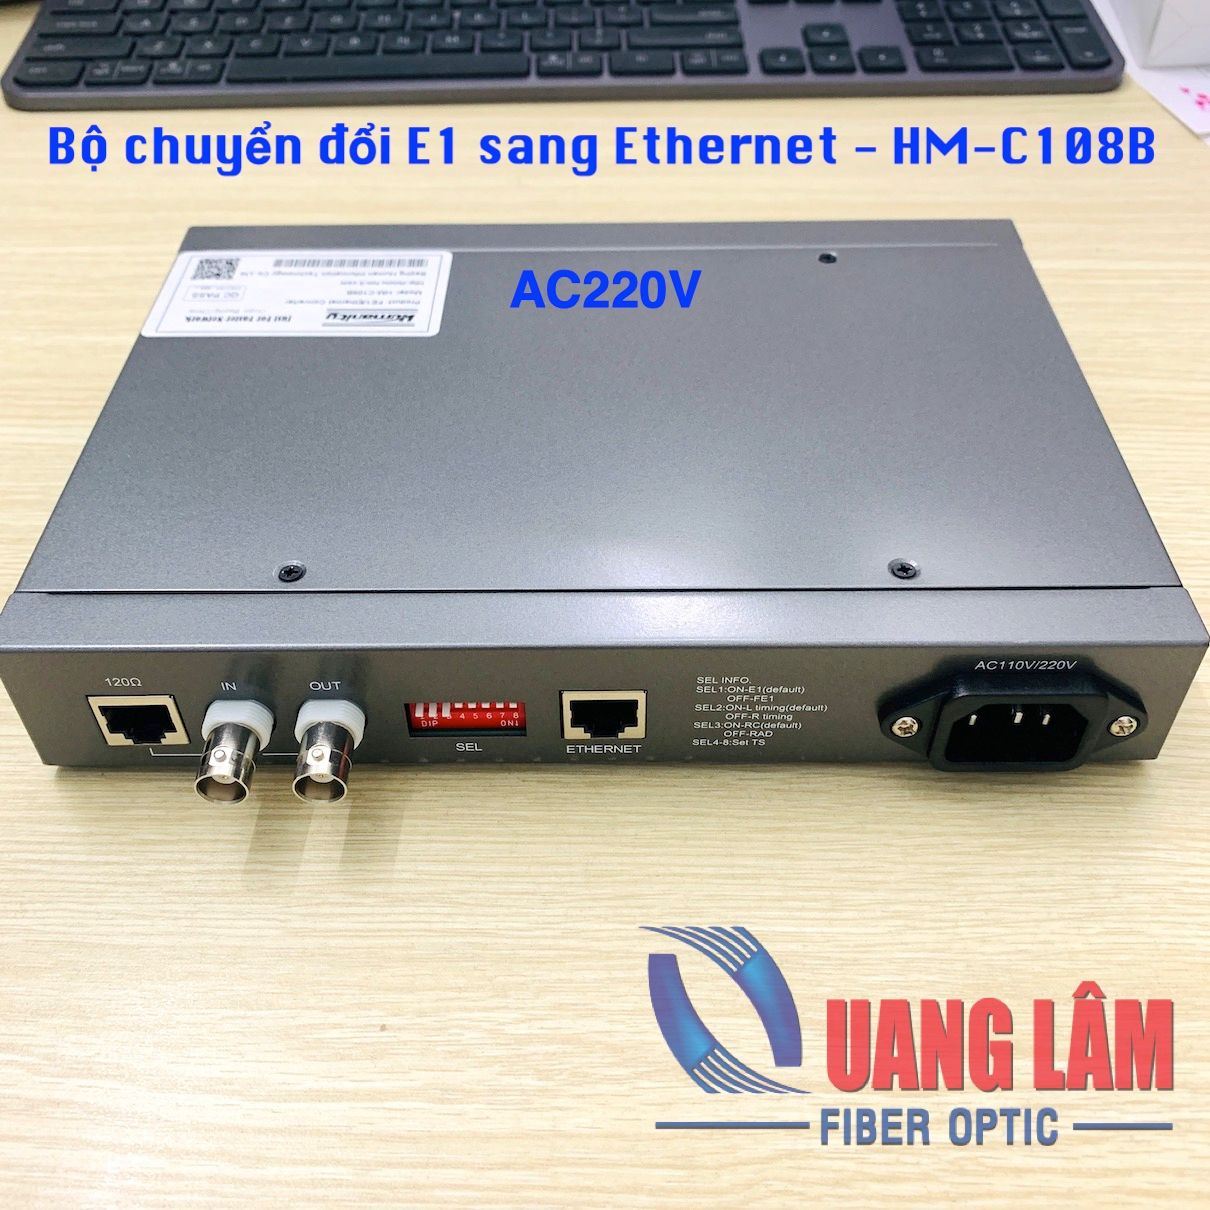 Bộ chuyển đổi giao thức E1 sang Ethernet, HM-C108B (AC220V) - Hãng Humanity